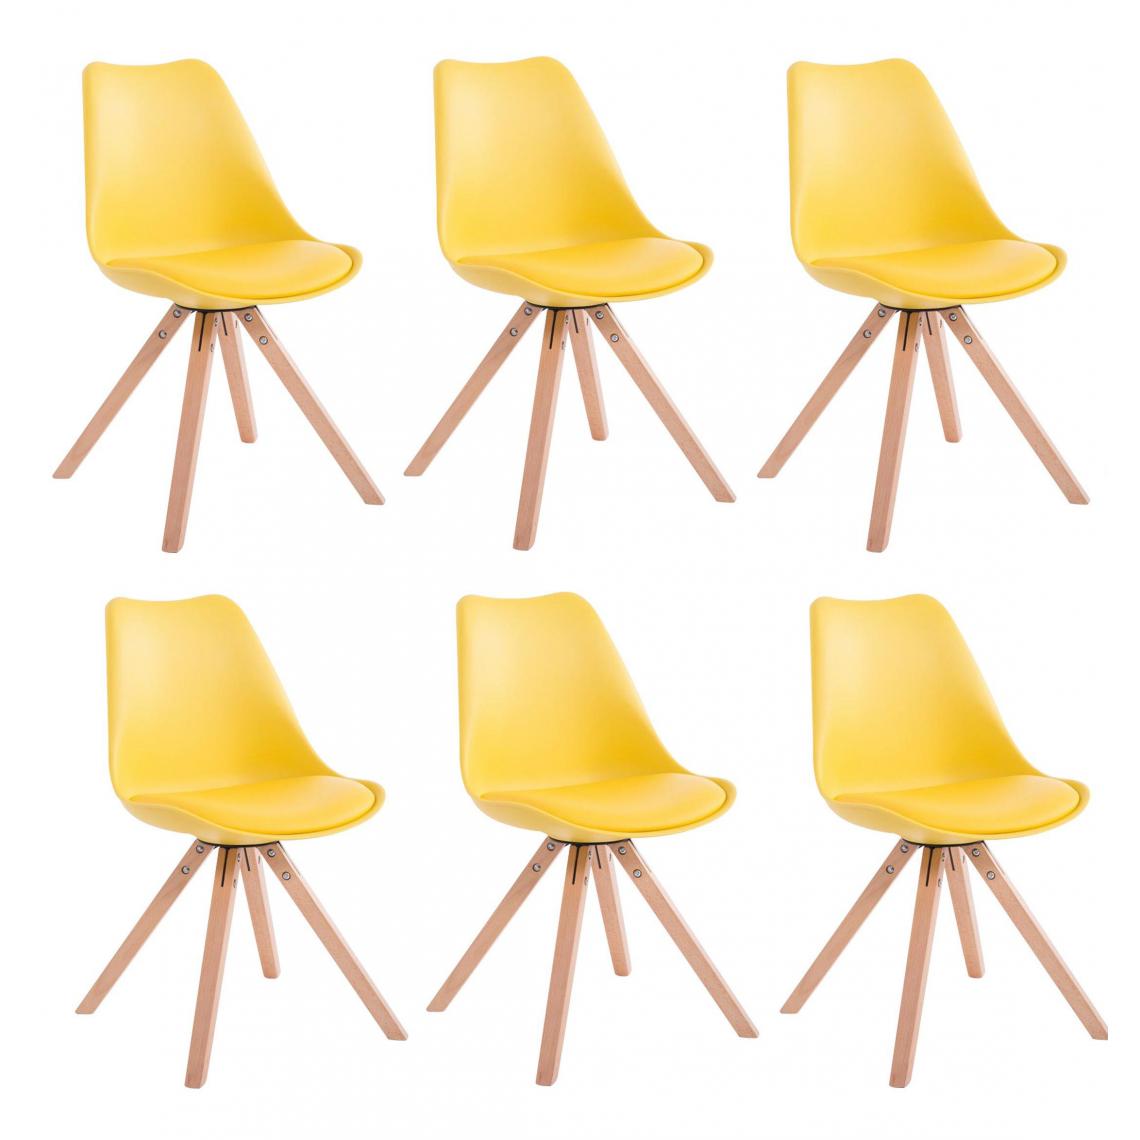 Decoshop26 - Lot de 6 chaises de salle à manger scandinave simili-cuir jaune pieds bois CDS10222 - Chaises